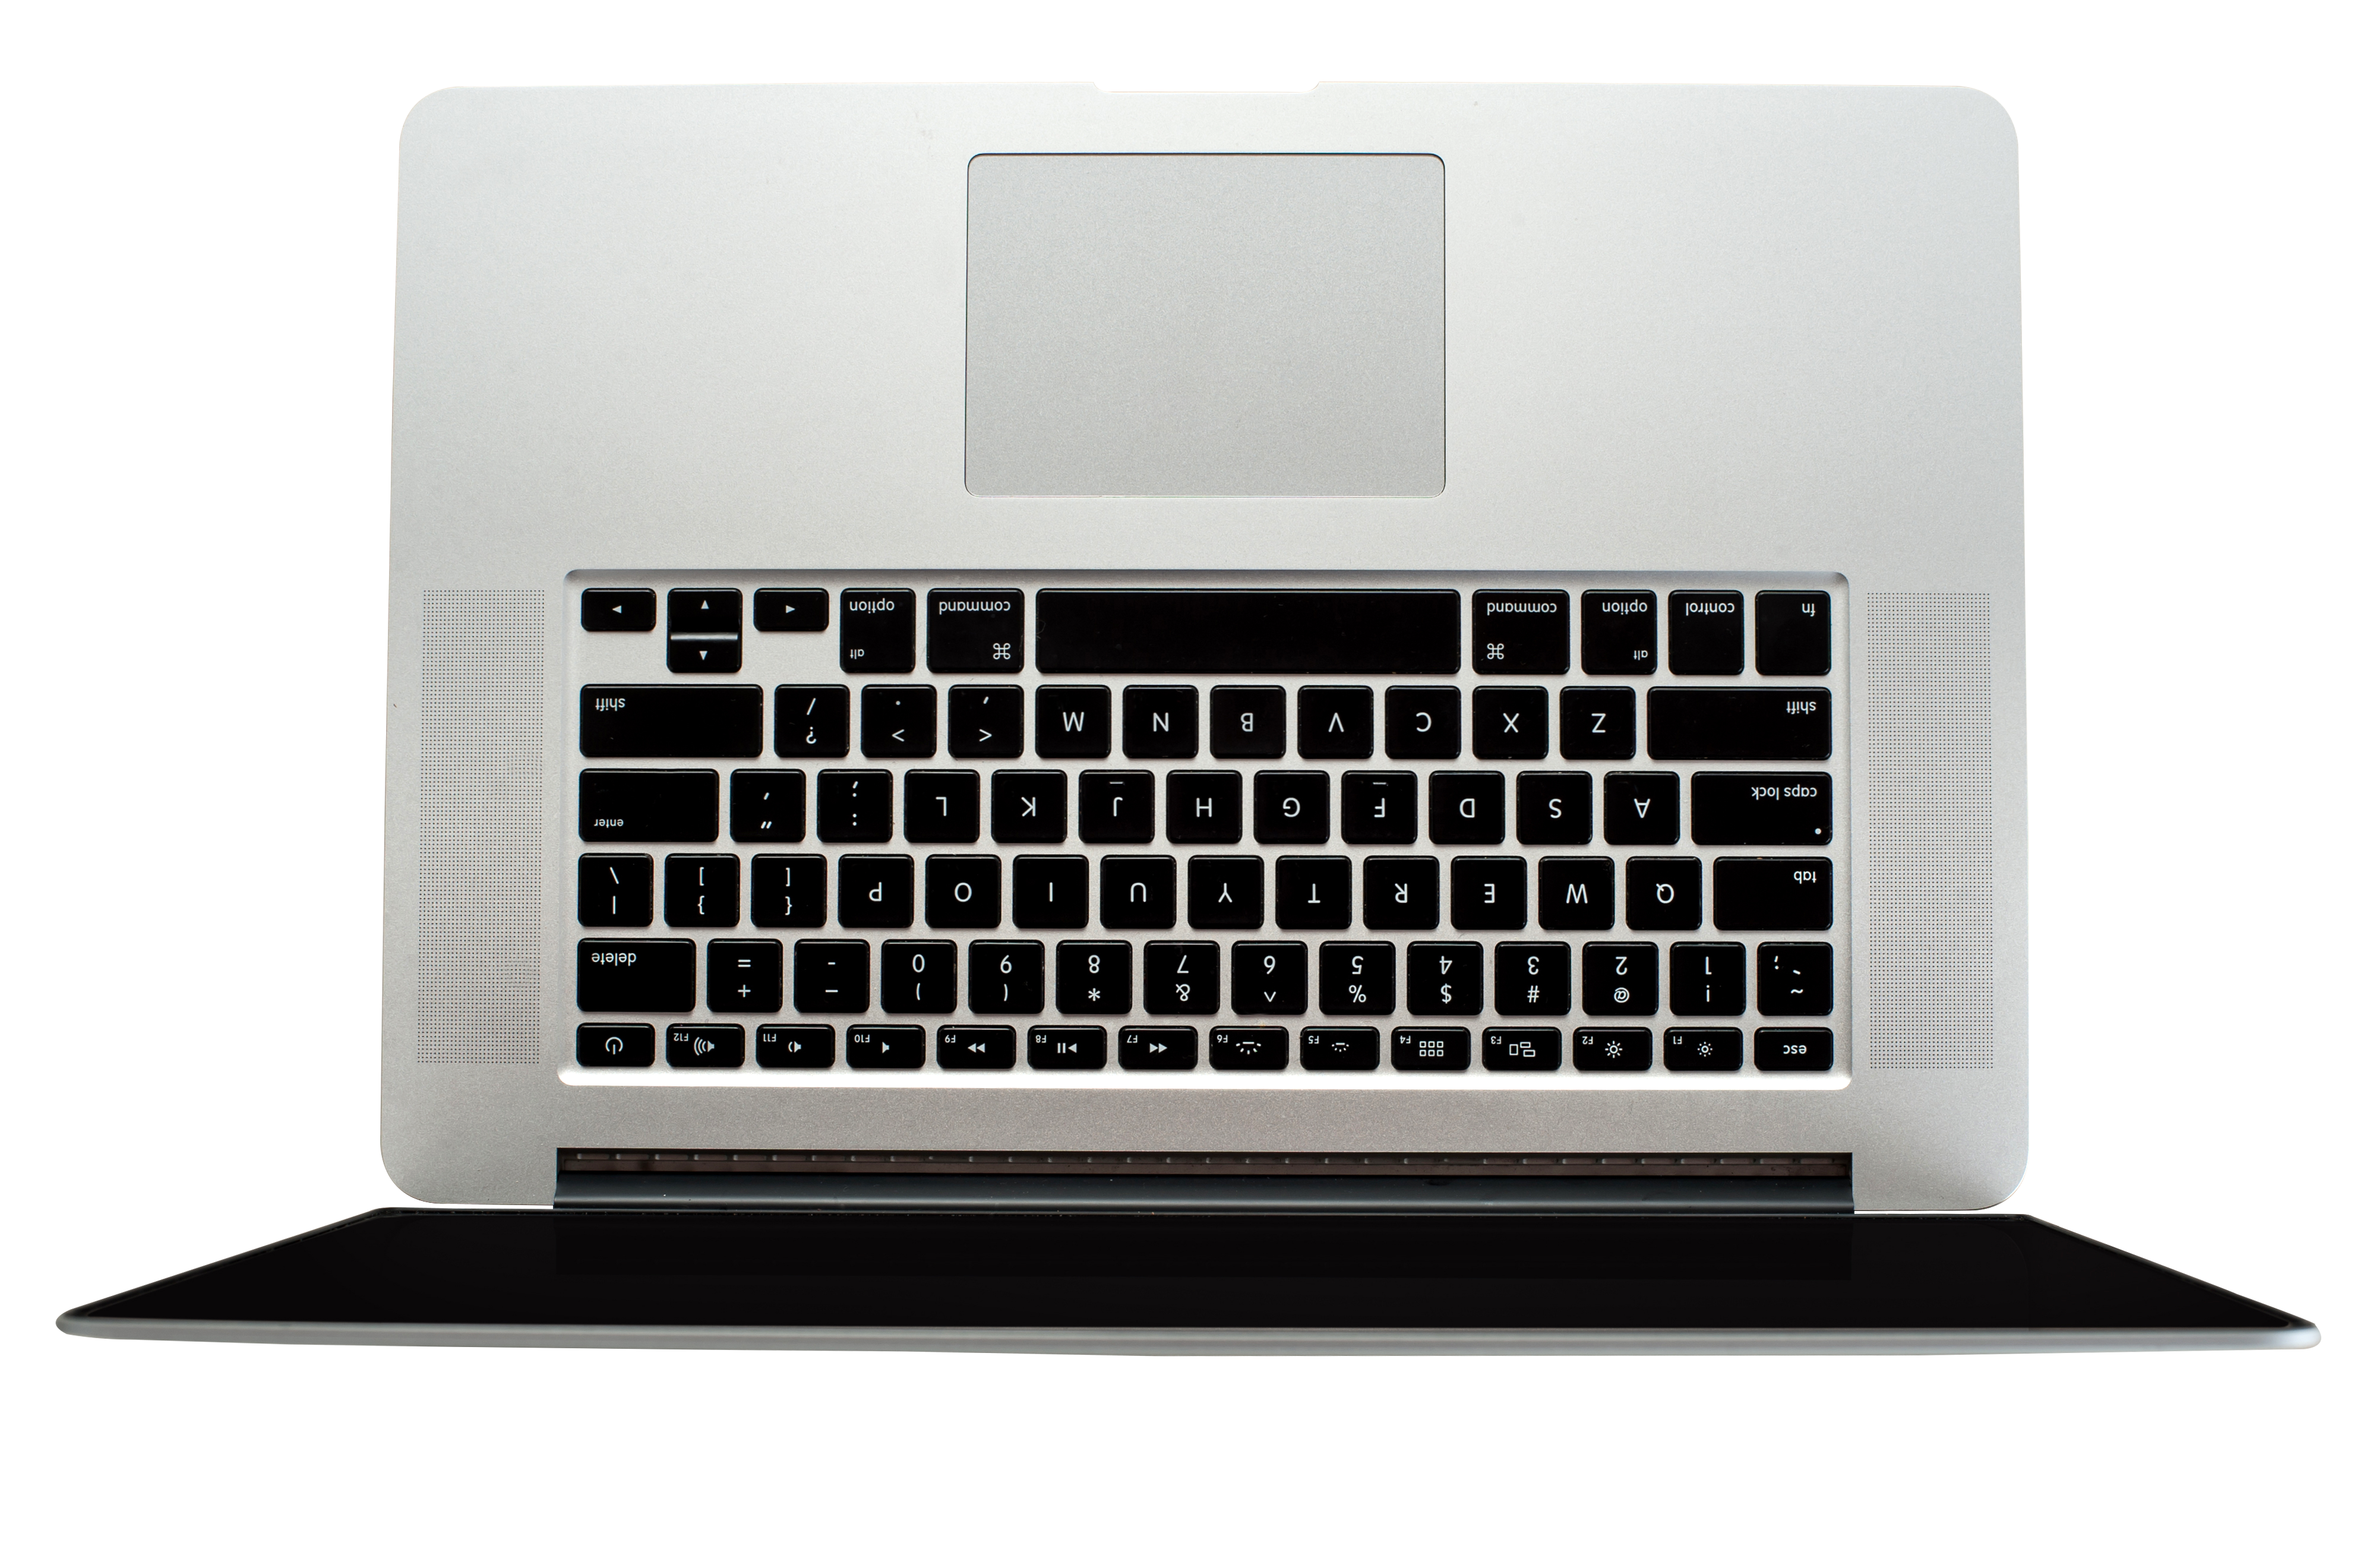 Laptop PNG Image